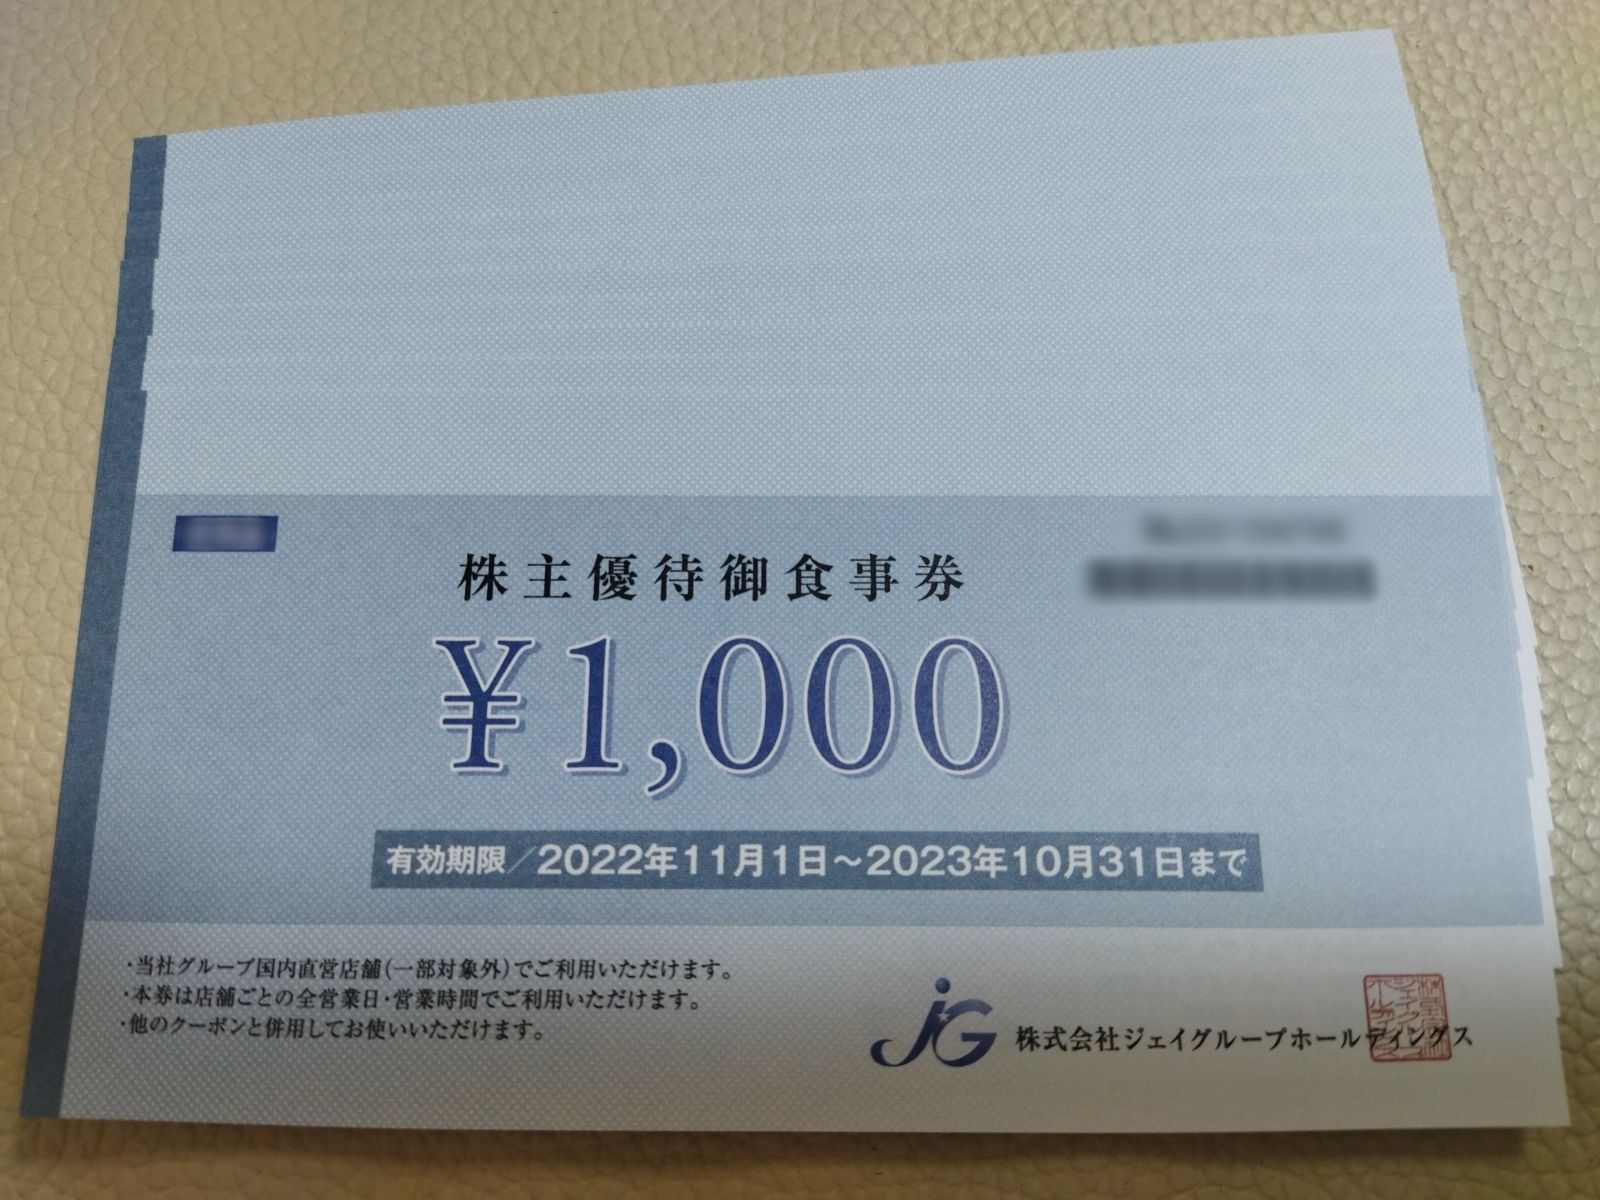 ジェイグループホールディングス 株主優待券 12,000円分 - Starfish